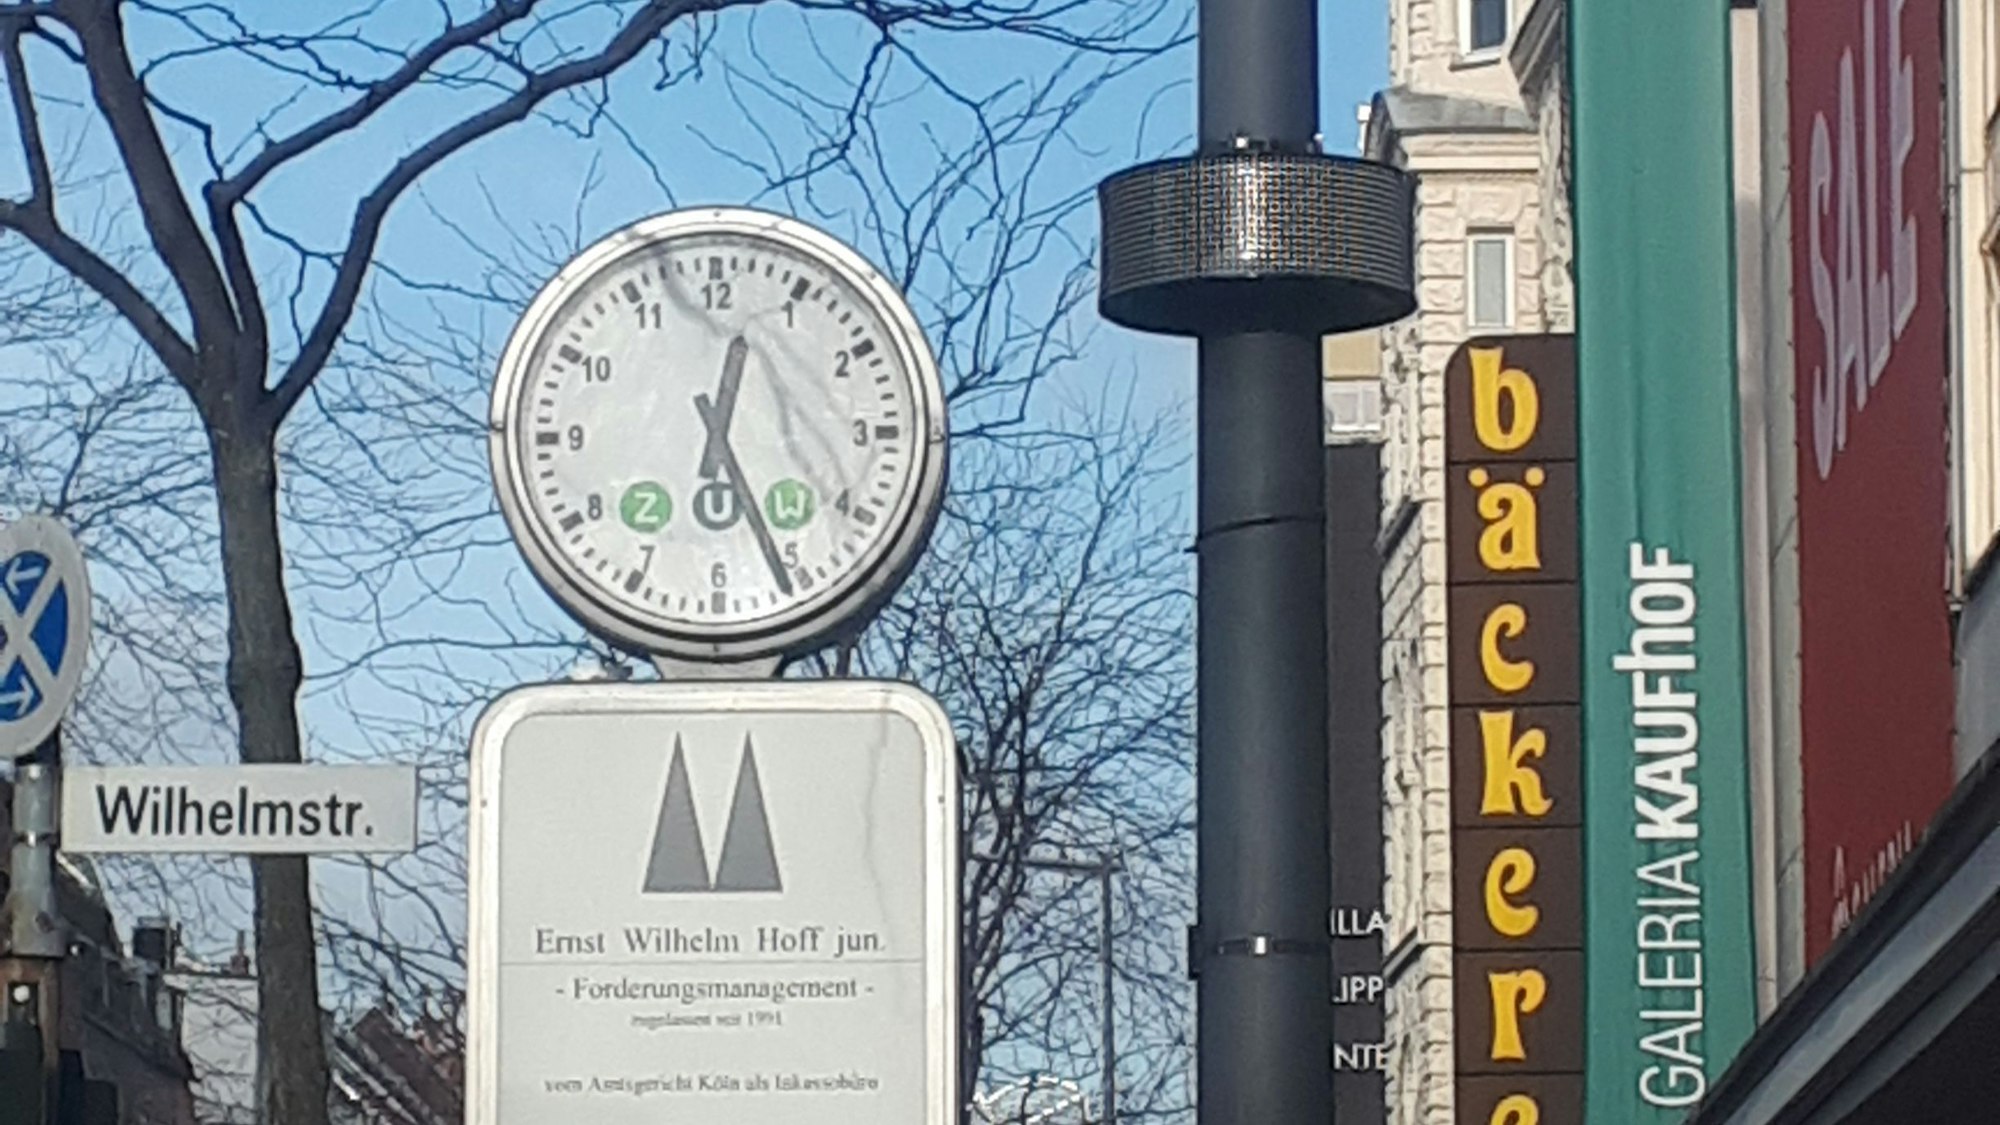 An einem Laternenmast ist ein rundes Display angebracht, daneben ist eine Uhr, ein Straßenschild und das Gebäude von Galeria Kaufhof zu sehen.